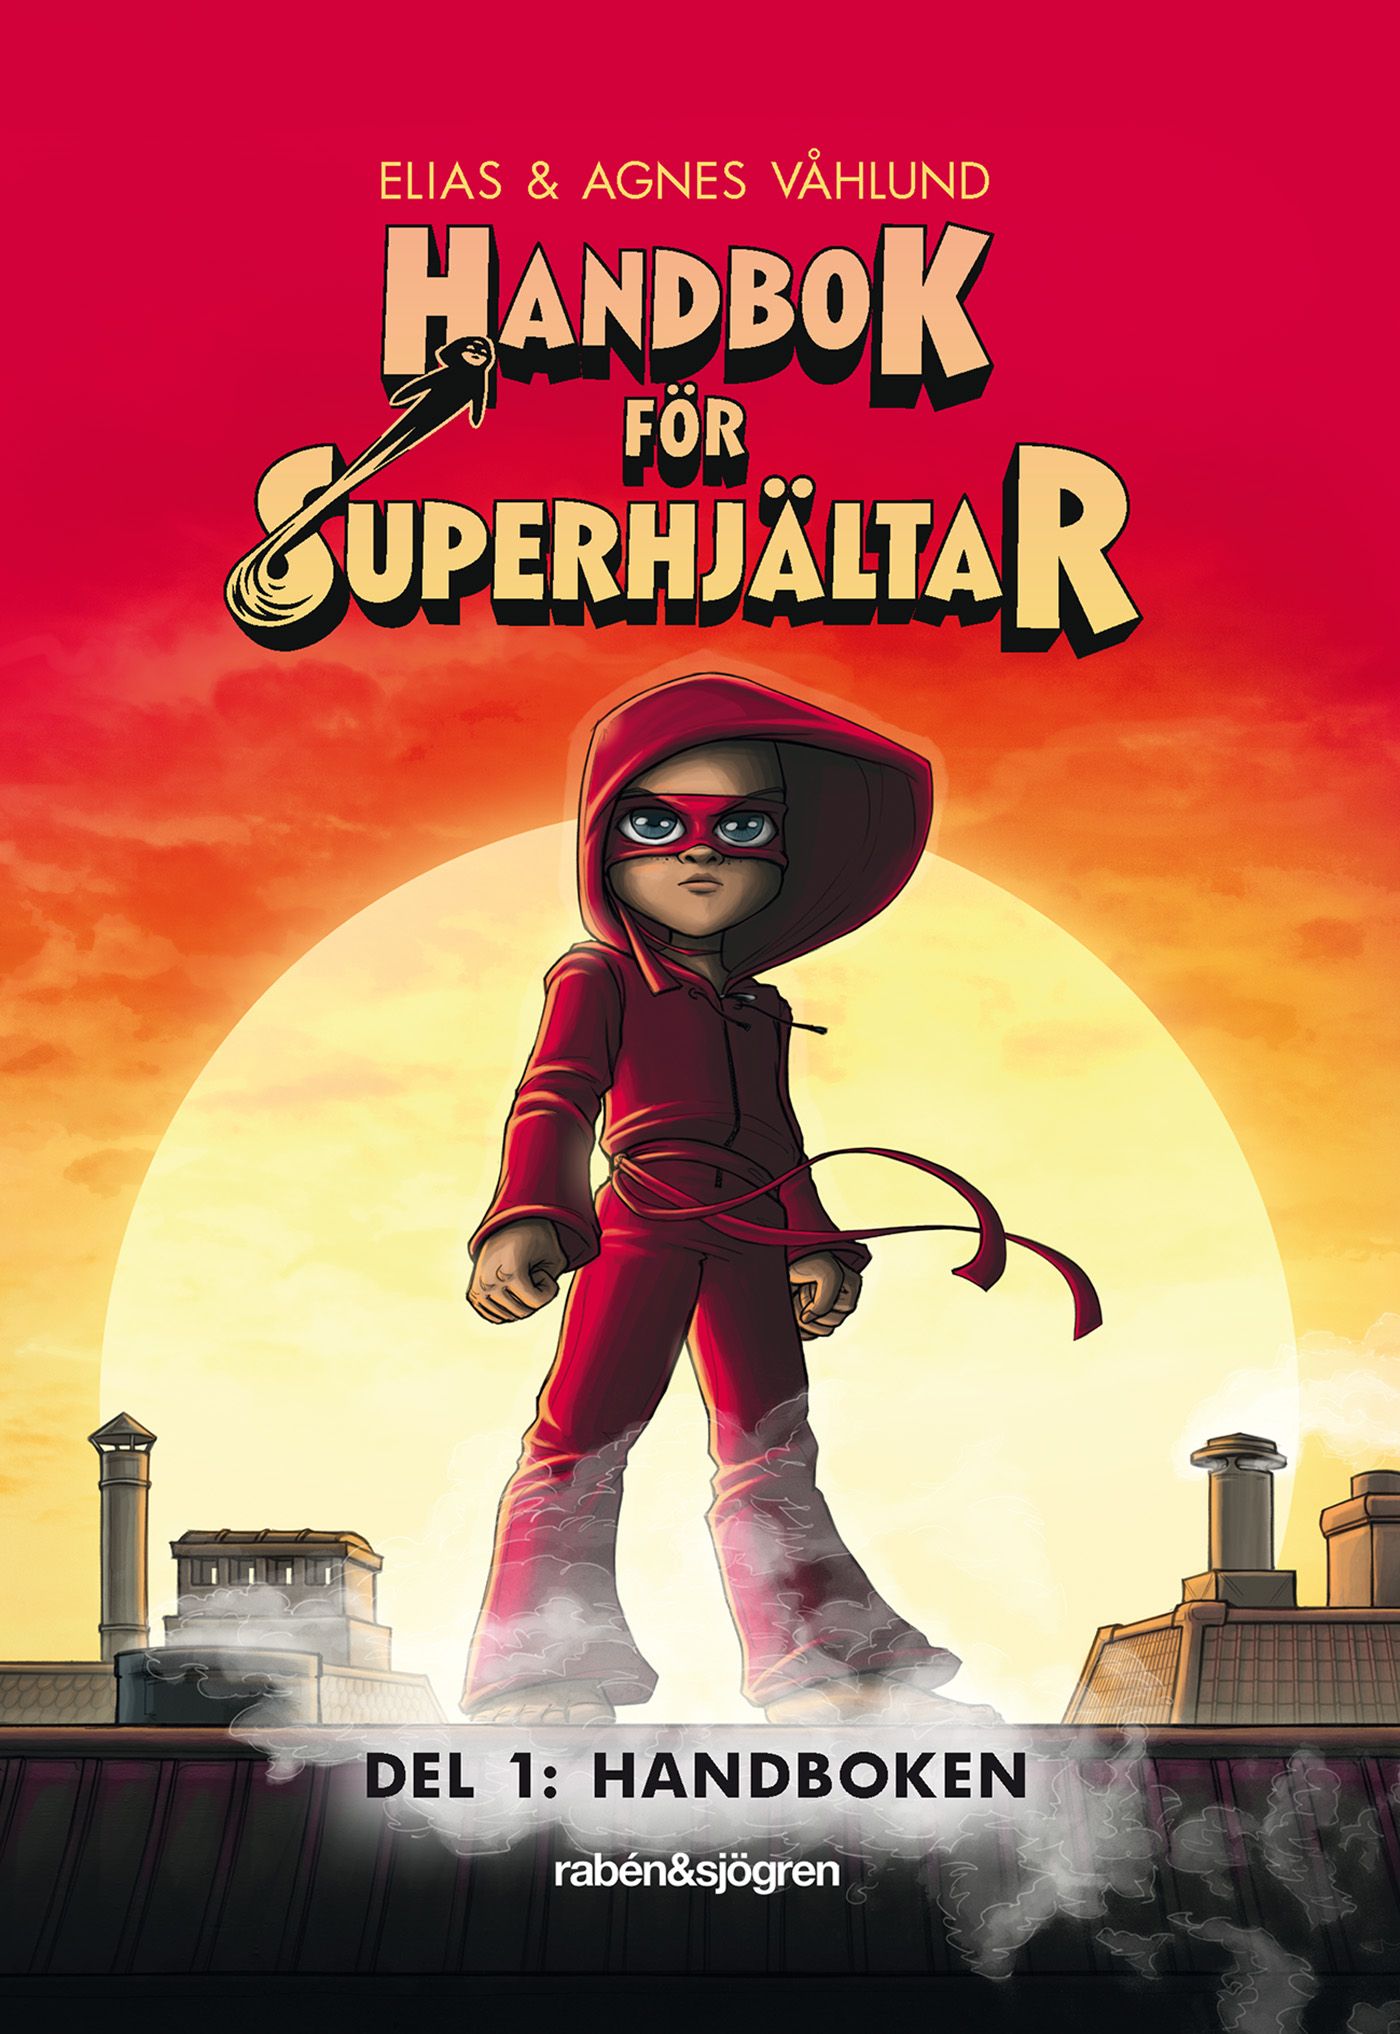 Handbok för superhjältar: Handboken, e-bog af Elias Våhlund